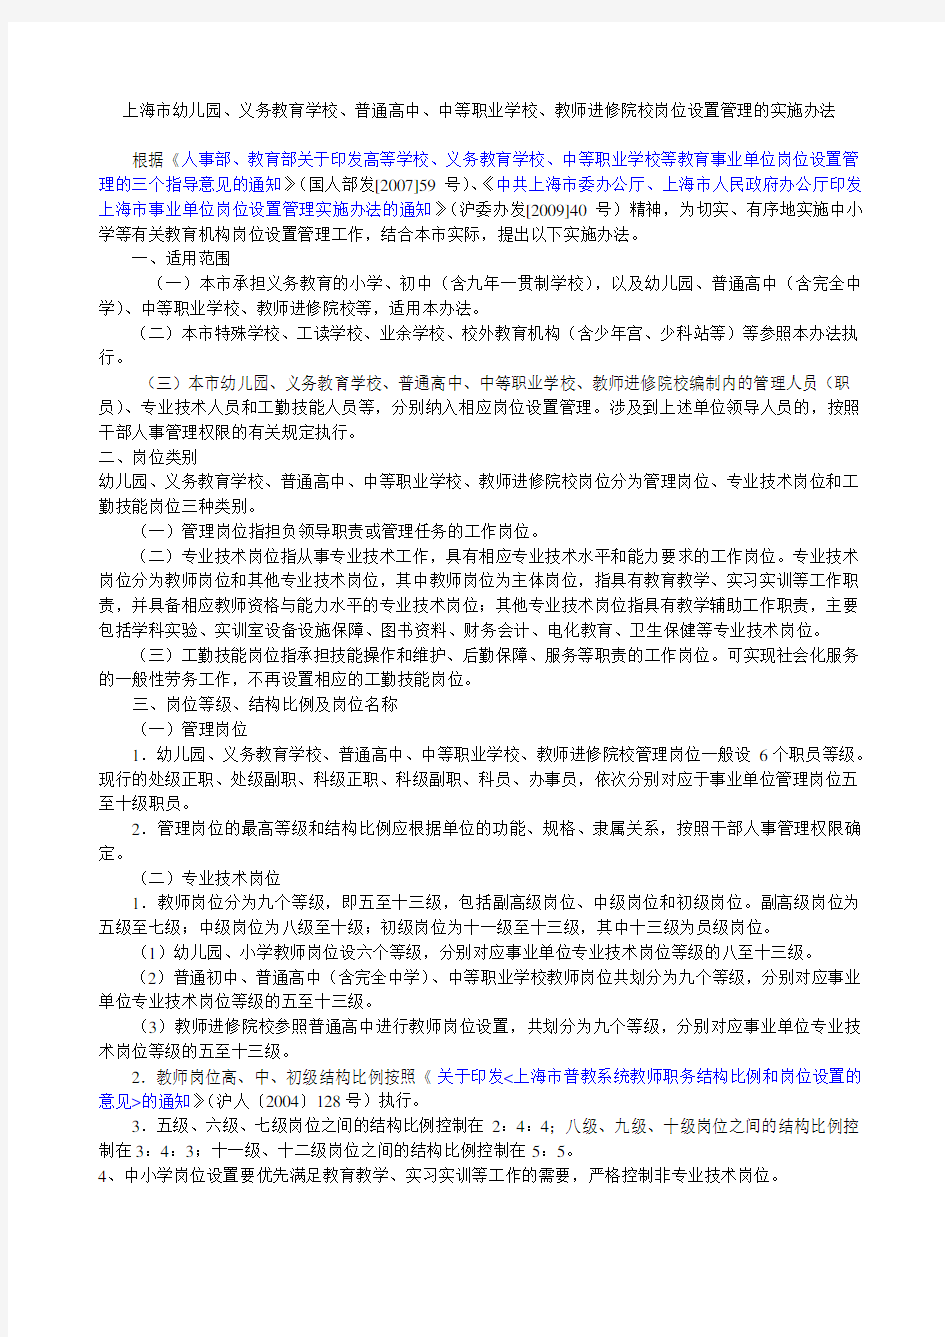 上海市幼儿园、义务教育学校、普通高中、中等职业学校、教师进修院校岗位设置管理的实施办法